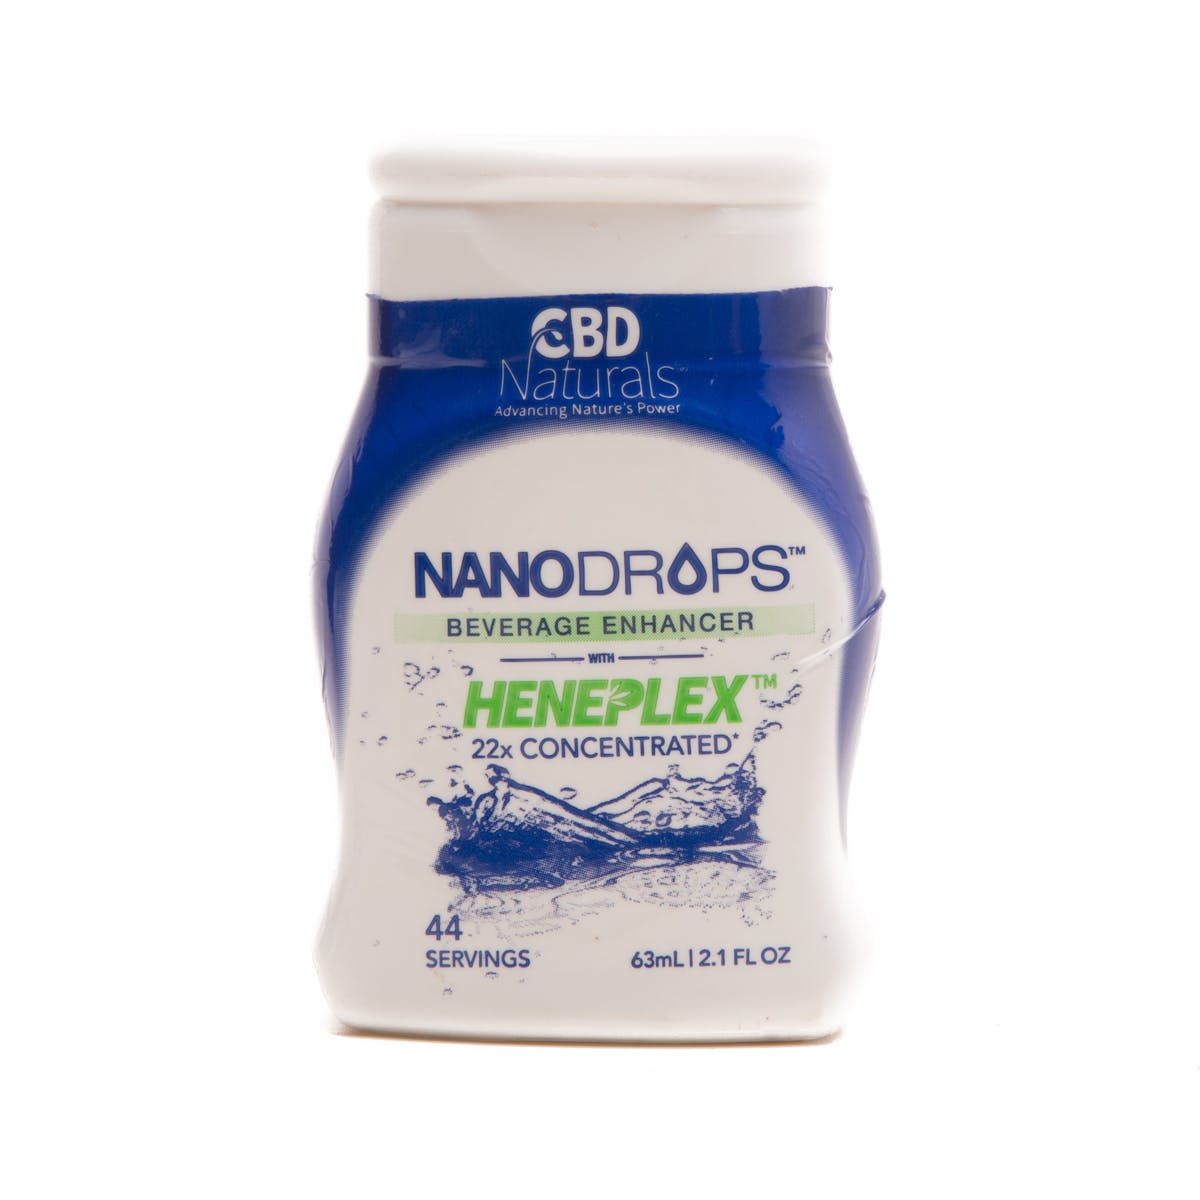 NanoDrops Beverage Enhancer